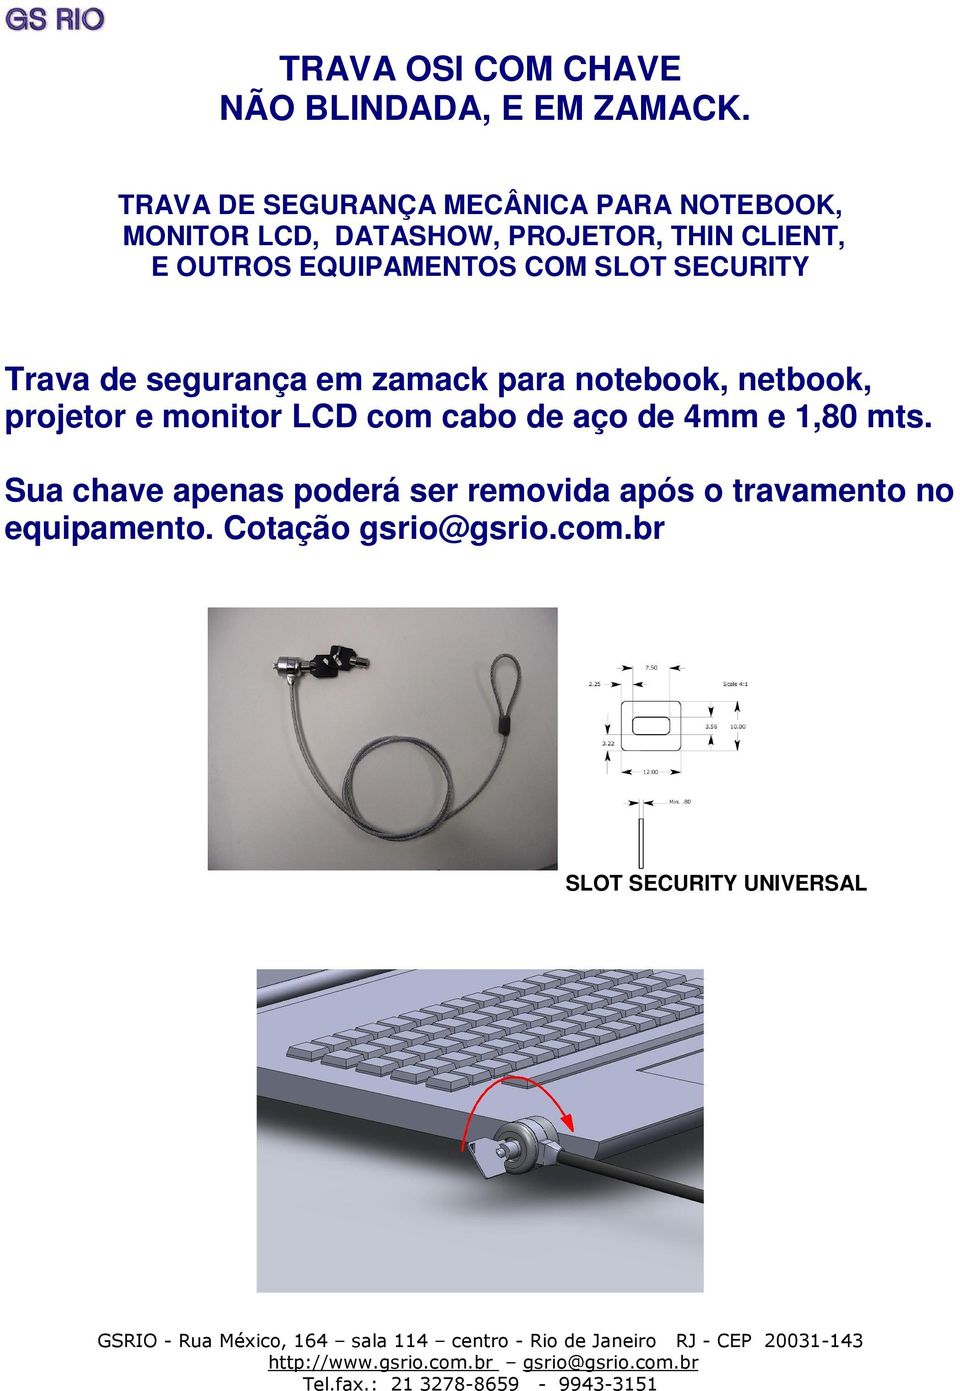 EQUIPAMENTOS COM SLOT SECURITY Trava de segurança em zamack para notebook, netbook, projetor e